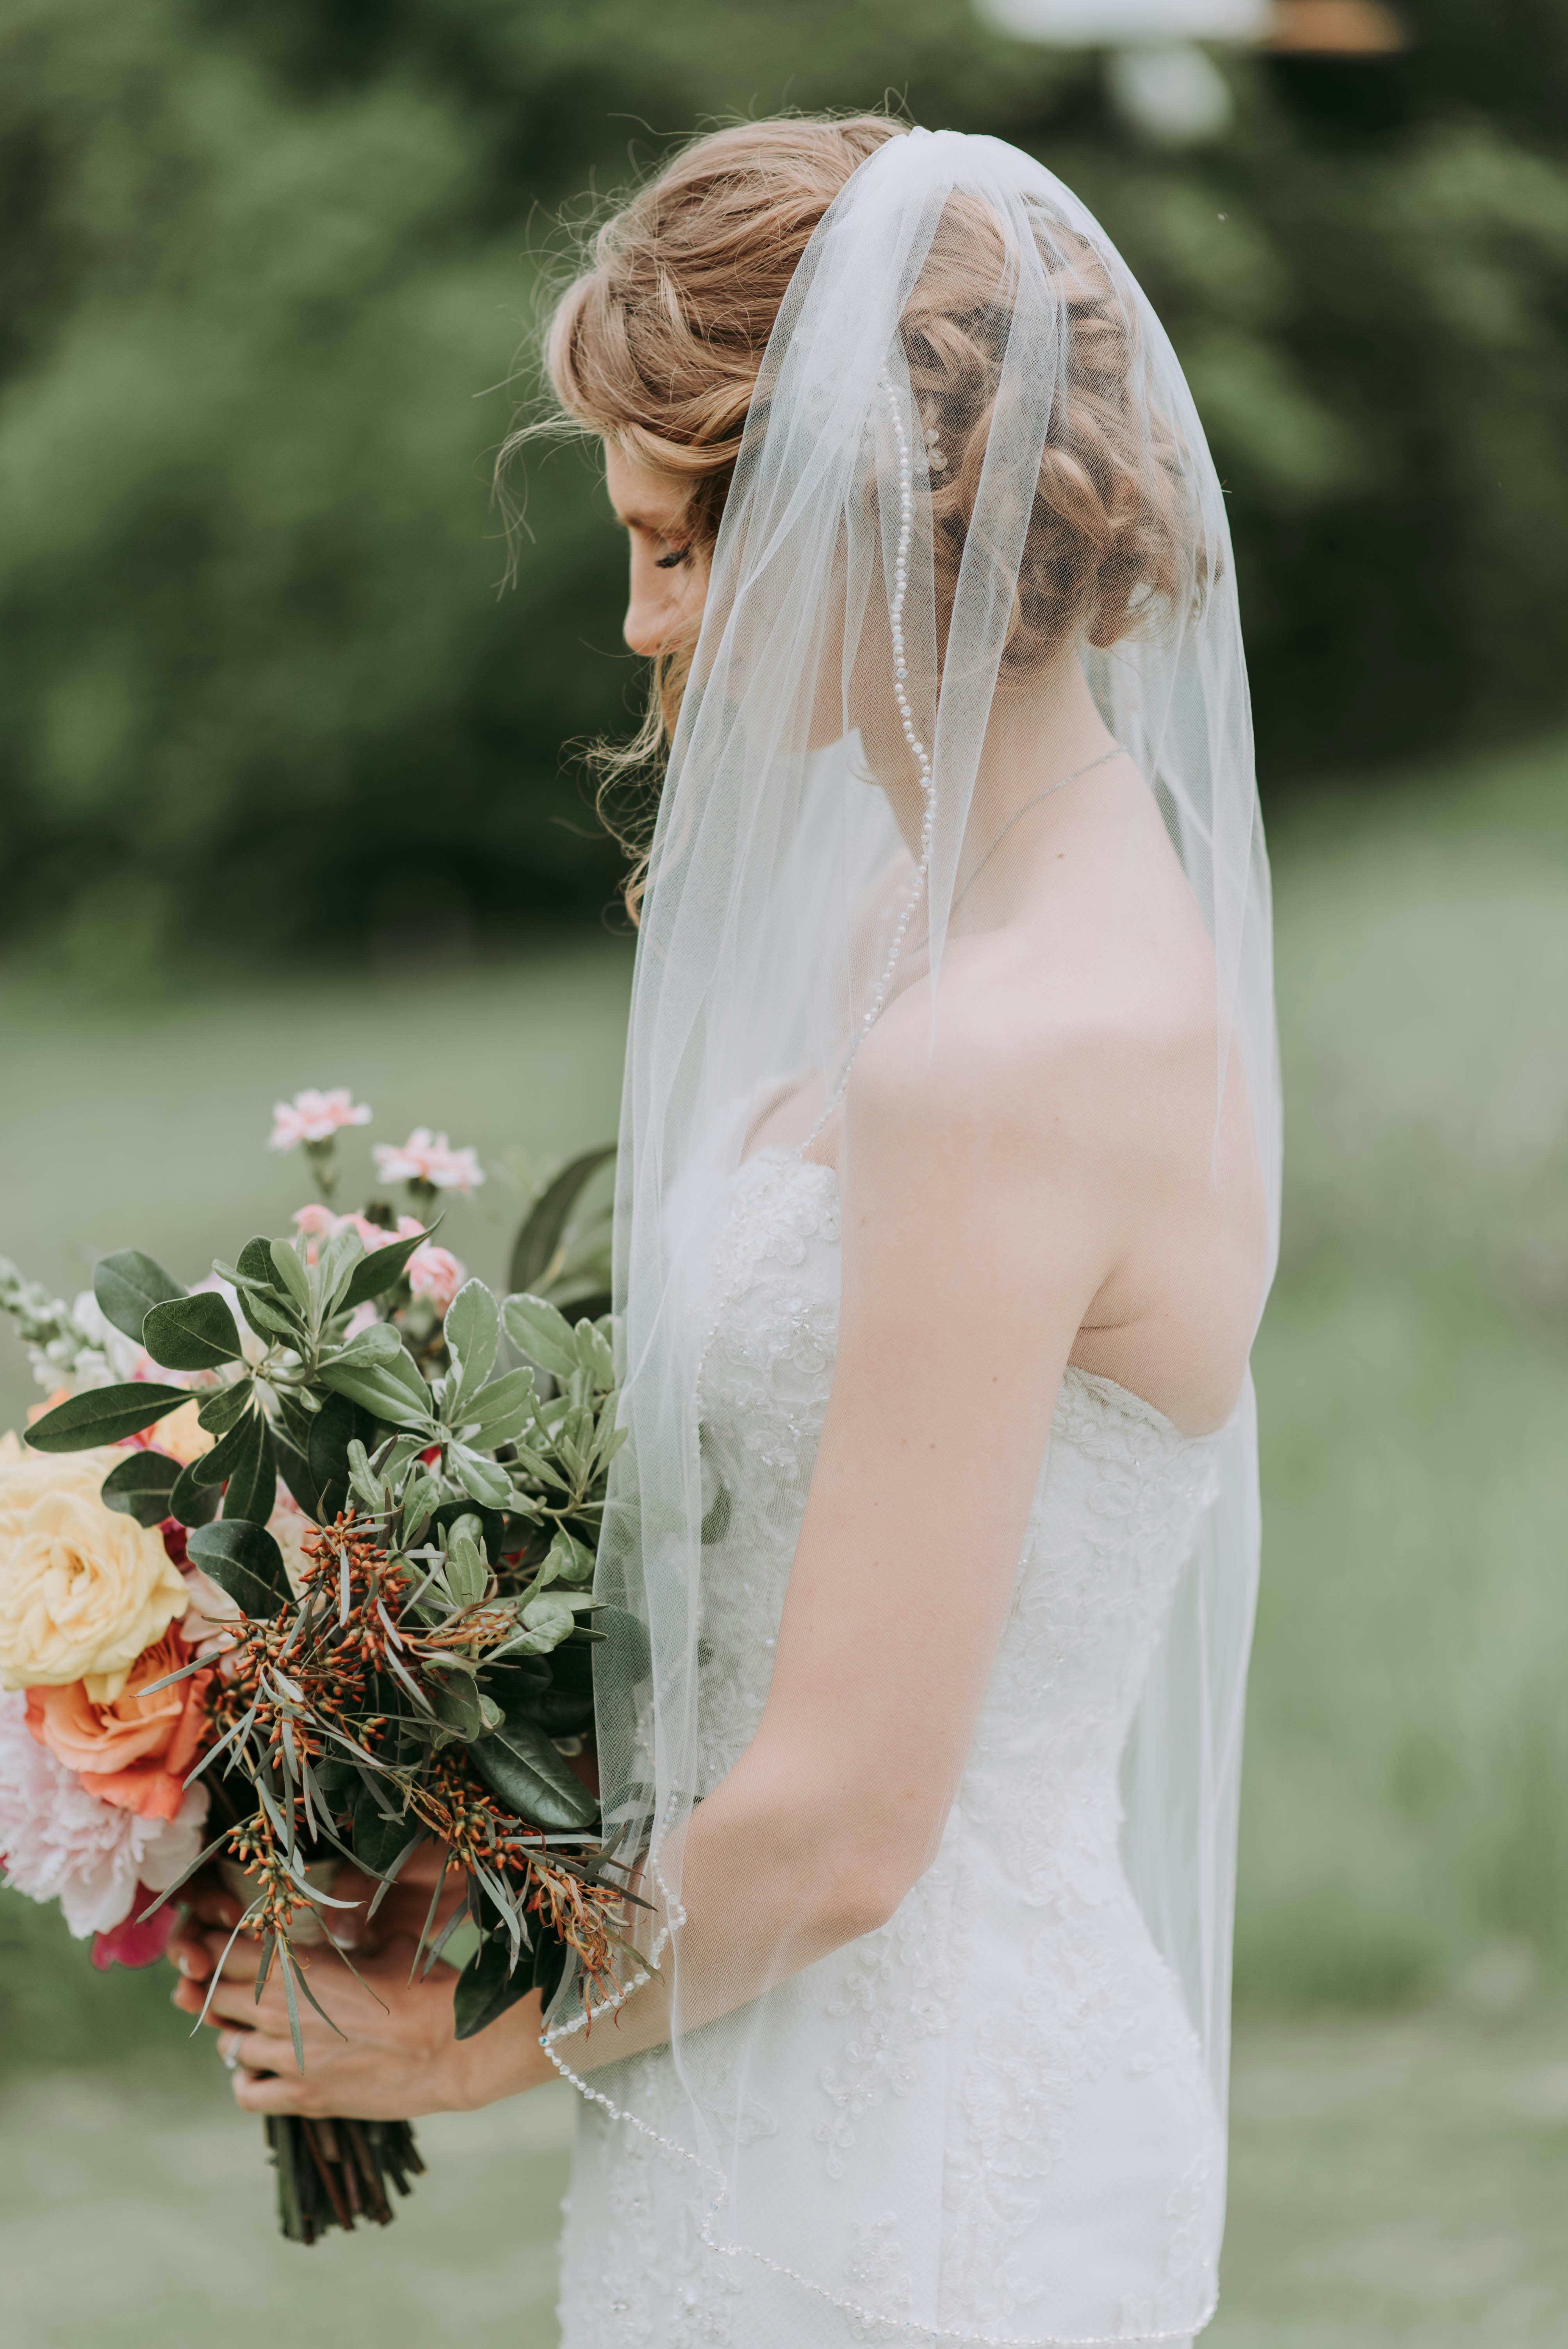 Une mariée triste tenant un bouquet de fleurs | Source : Unsplash